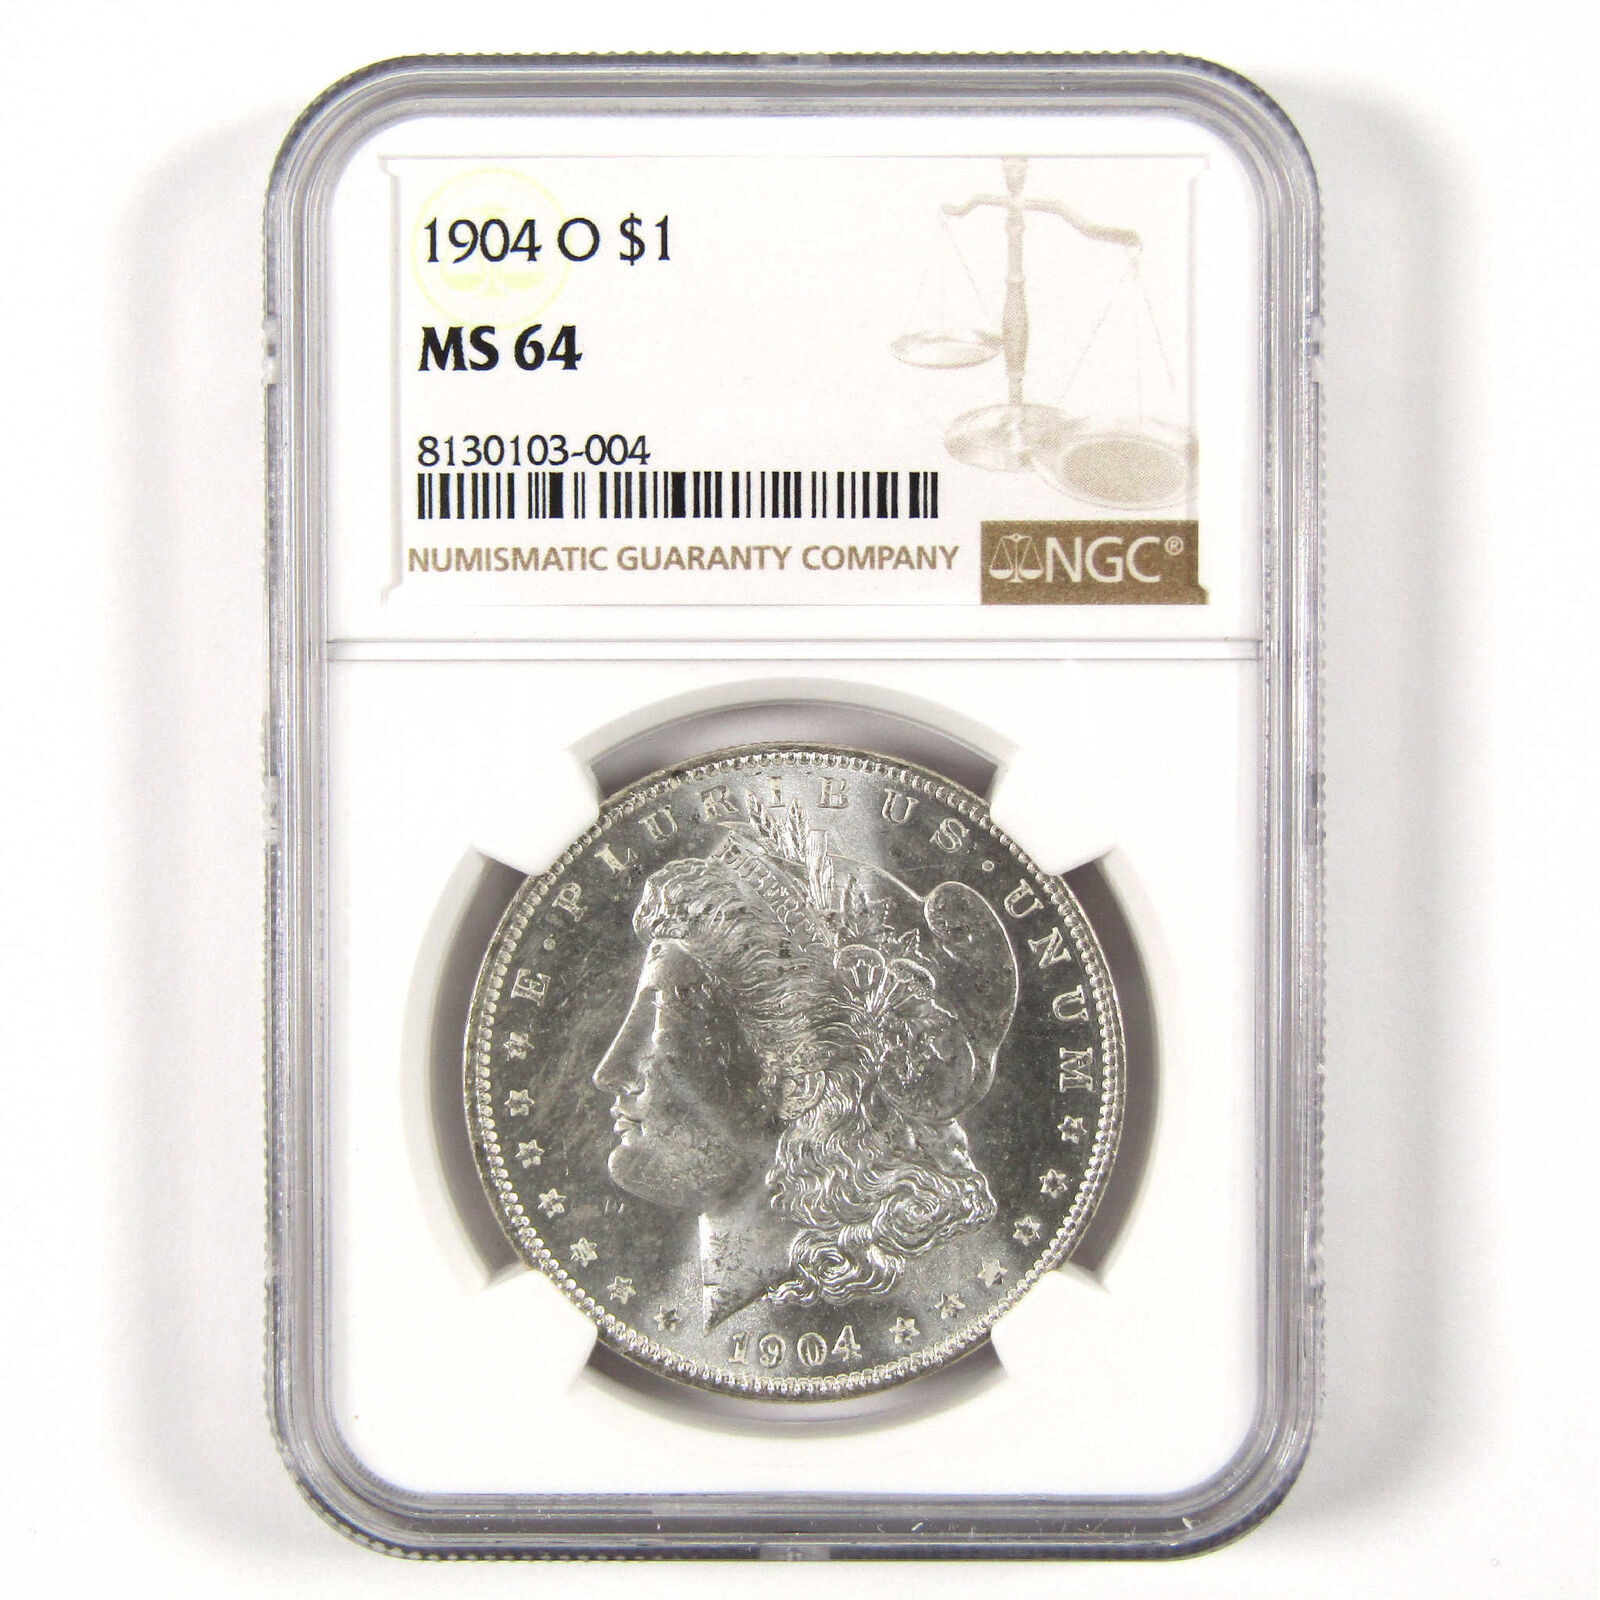 1904 O Morgan Dollar MS 64 NGC Silver $1 Uncirculated Coin SKU:CPC6286